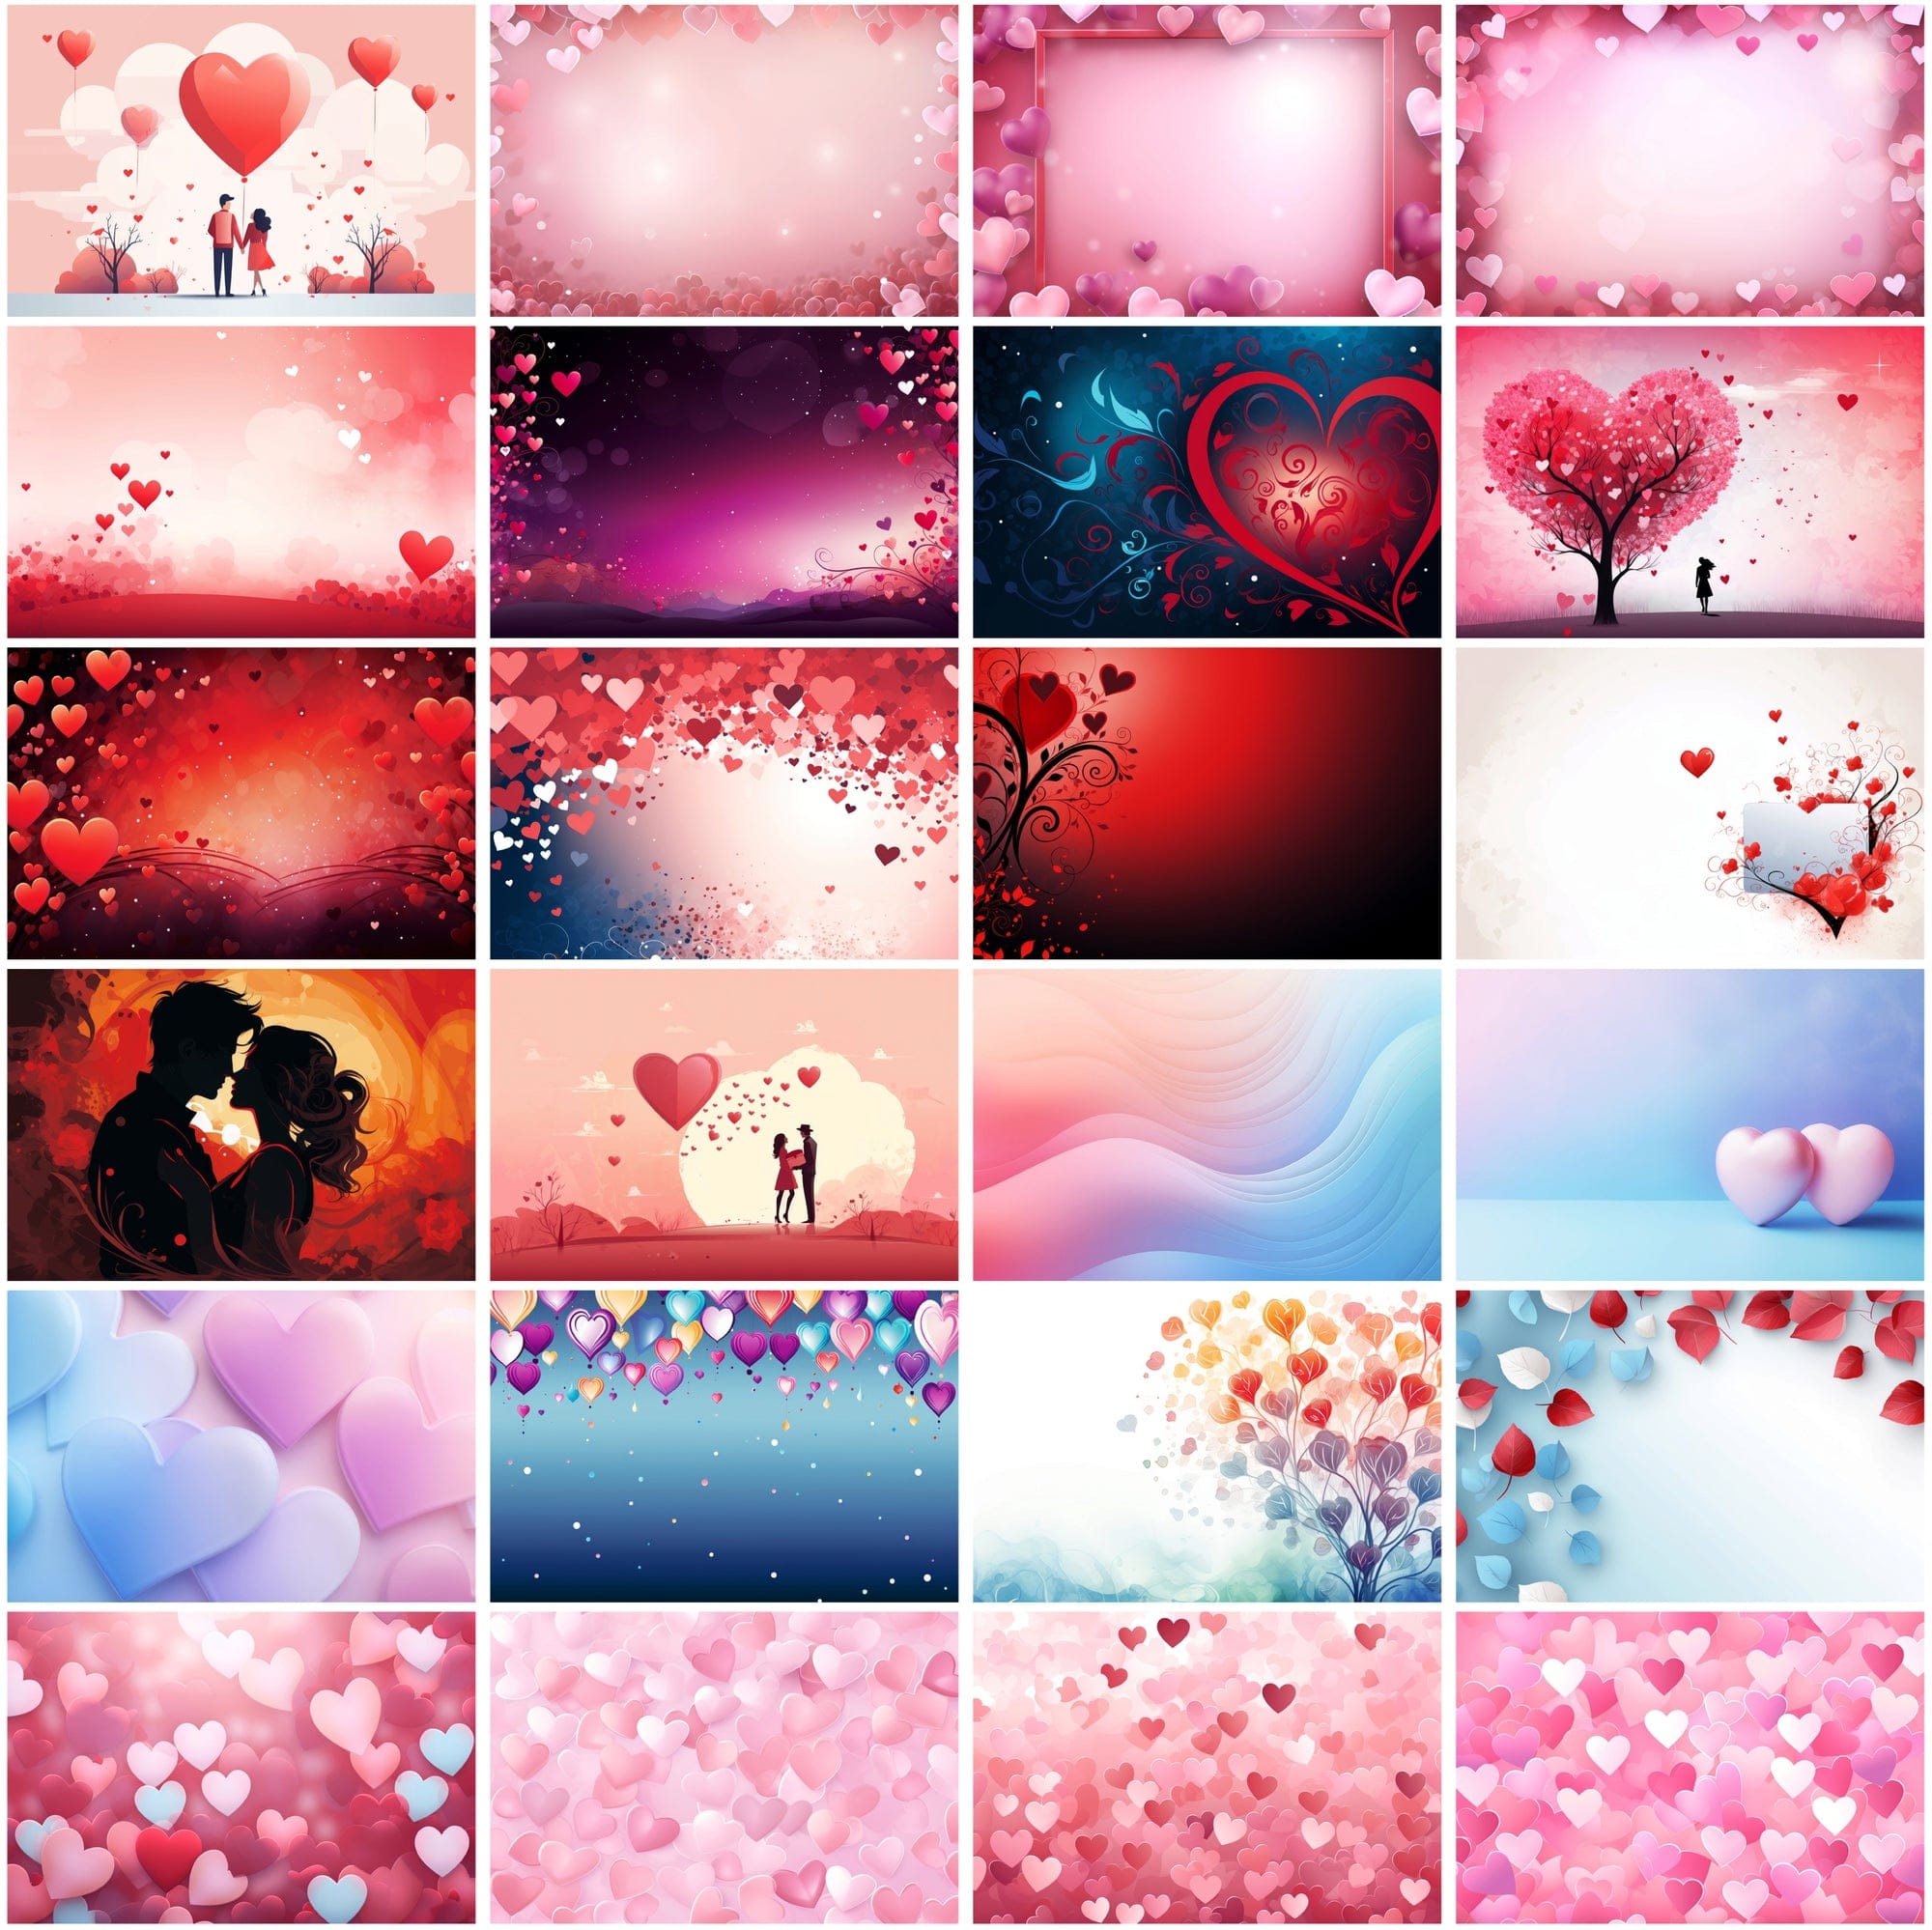 330 Love-Themed High-Resolution JPG Images for Valentine's Digital Download Sumobundle